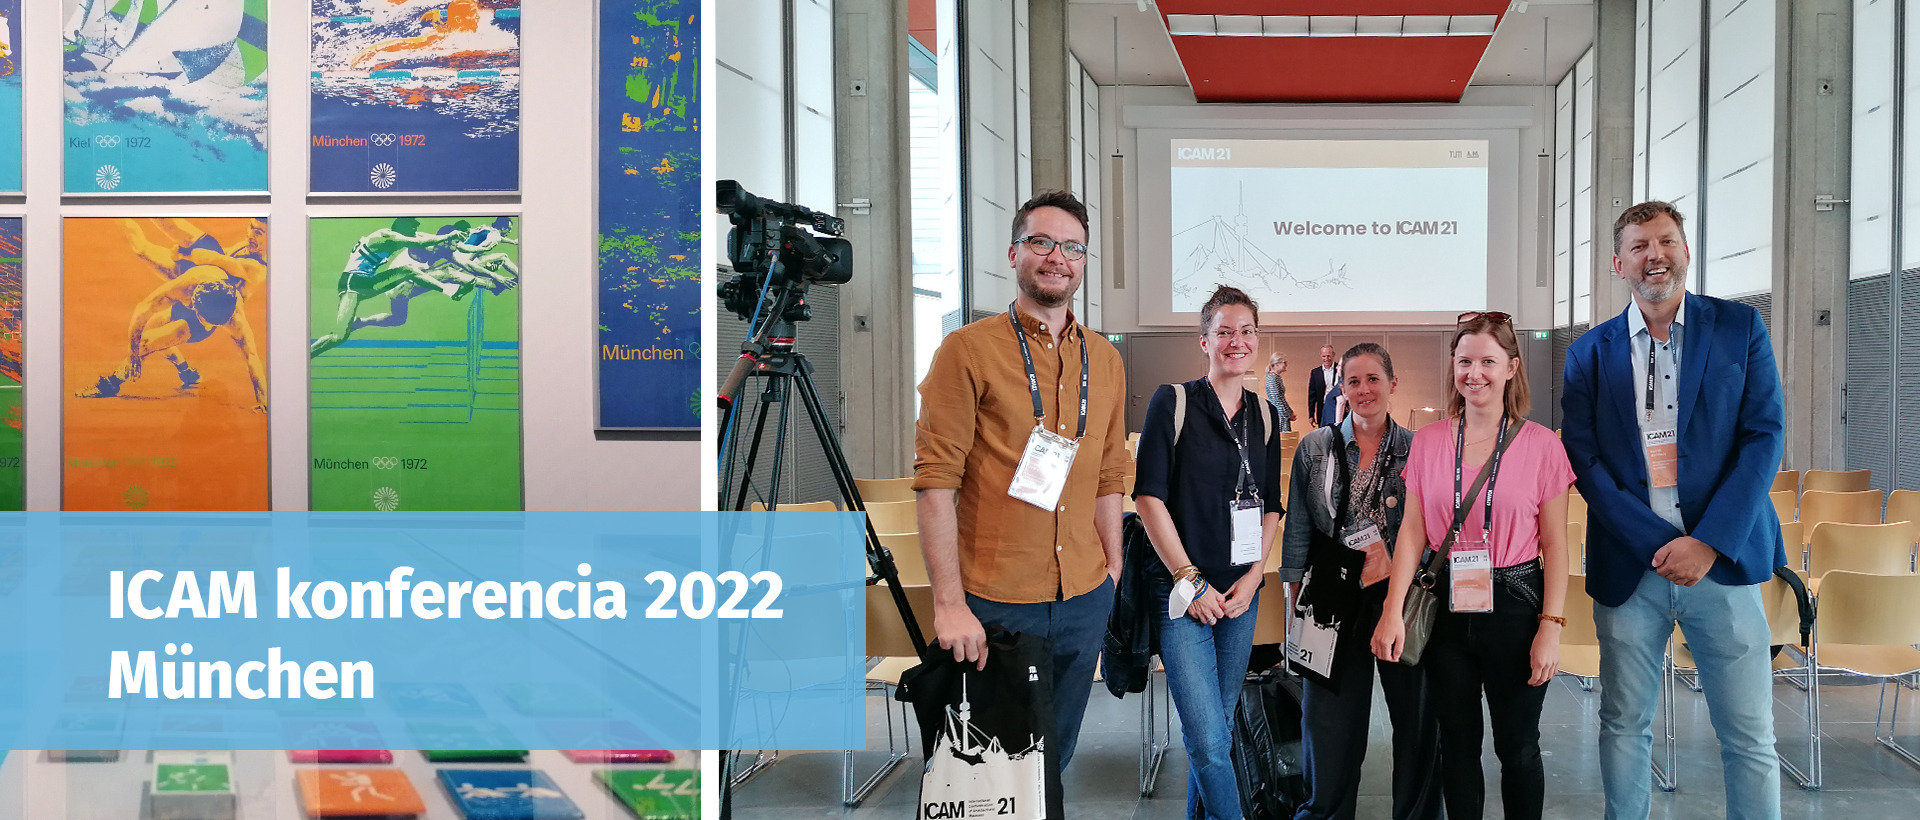 ICAM konferencia 2022 – München